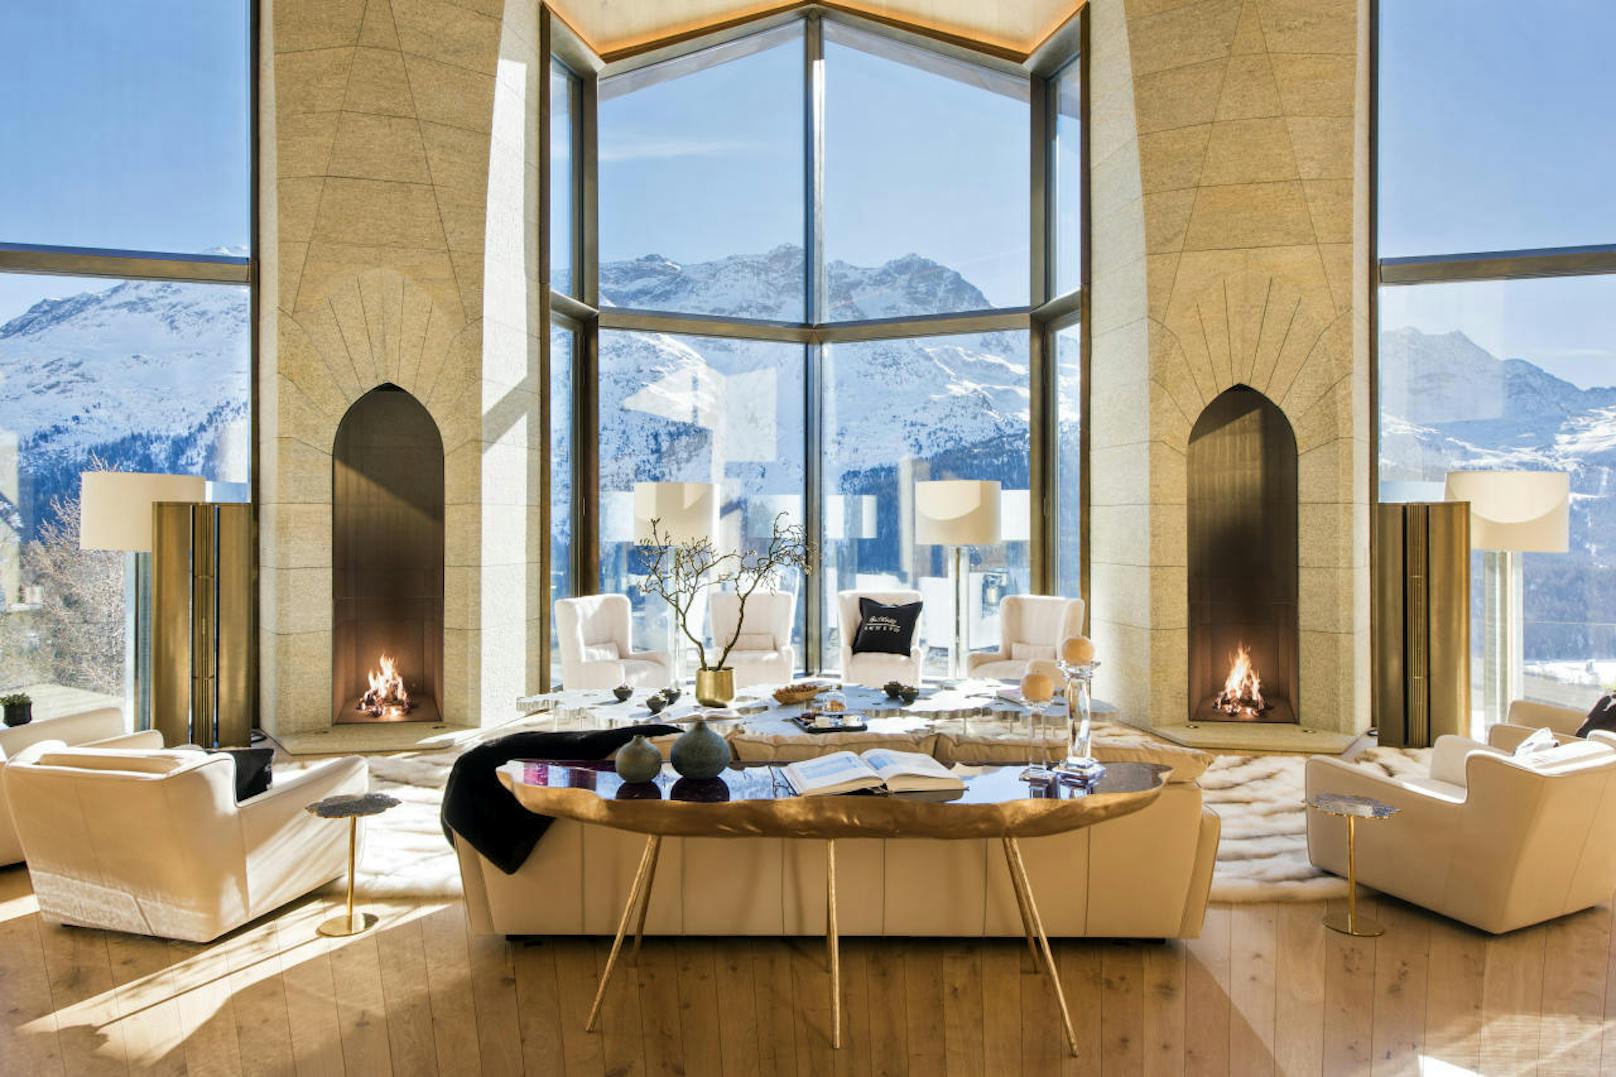 Die elf Meter hohen Fenster im Eingangsbereich bieten einen fantastischen Blick auf die Alpen.